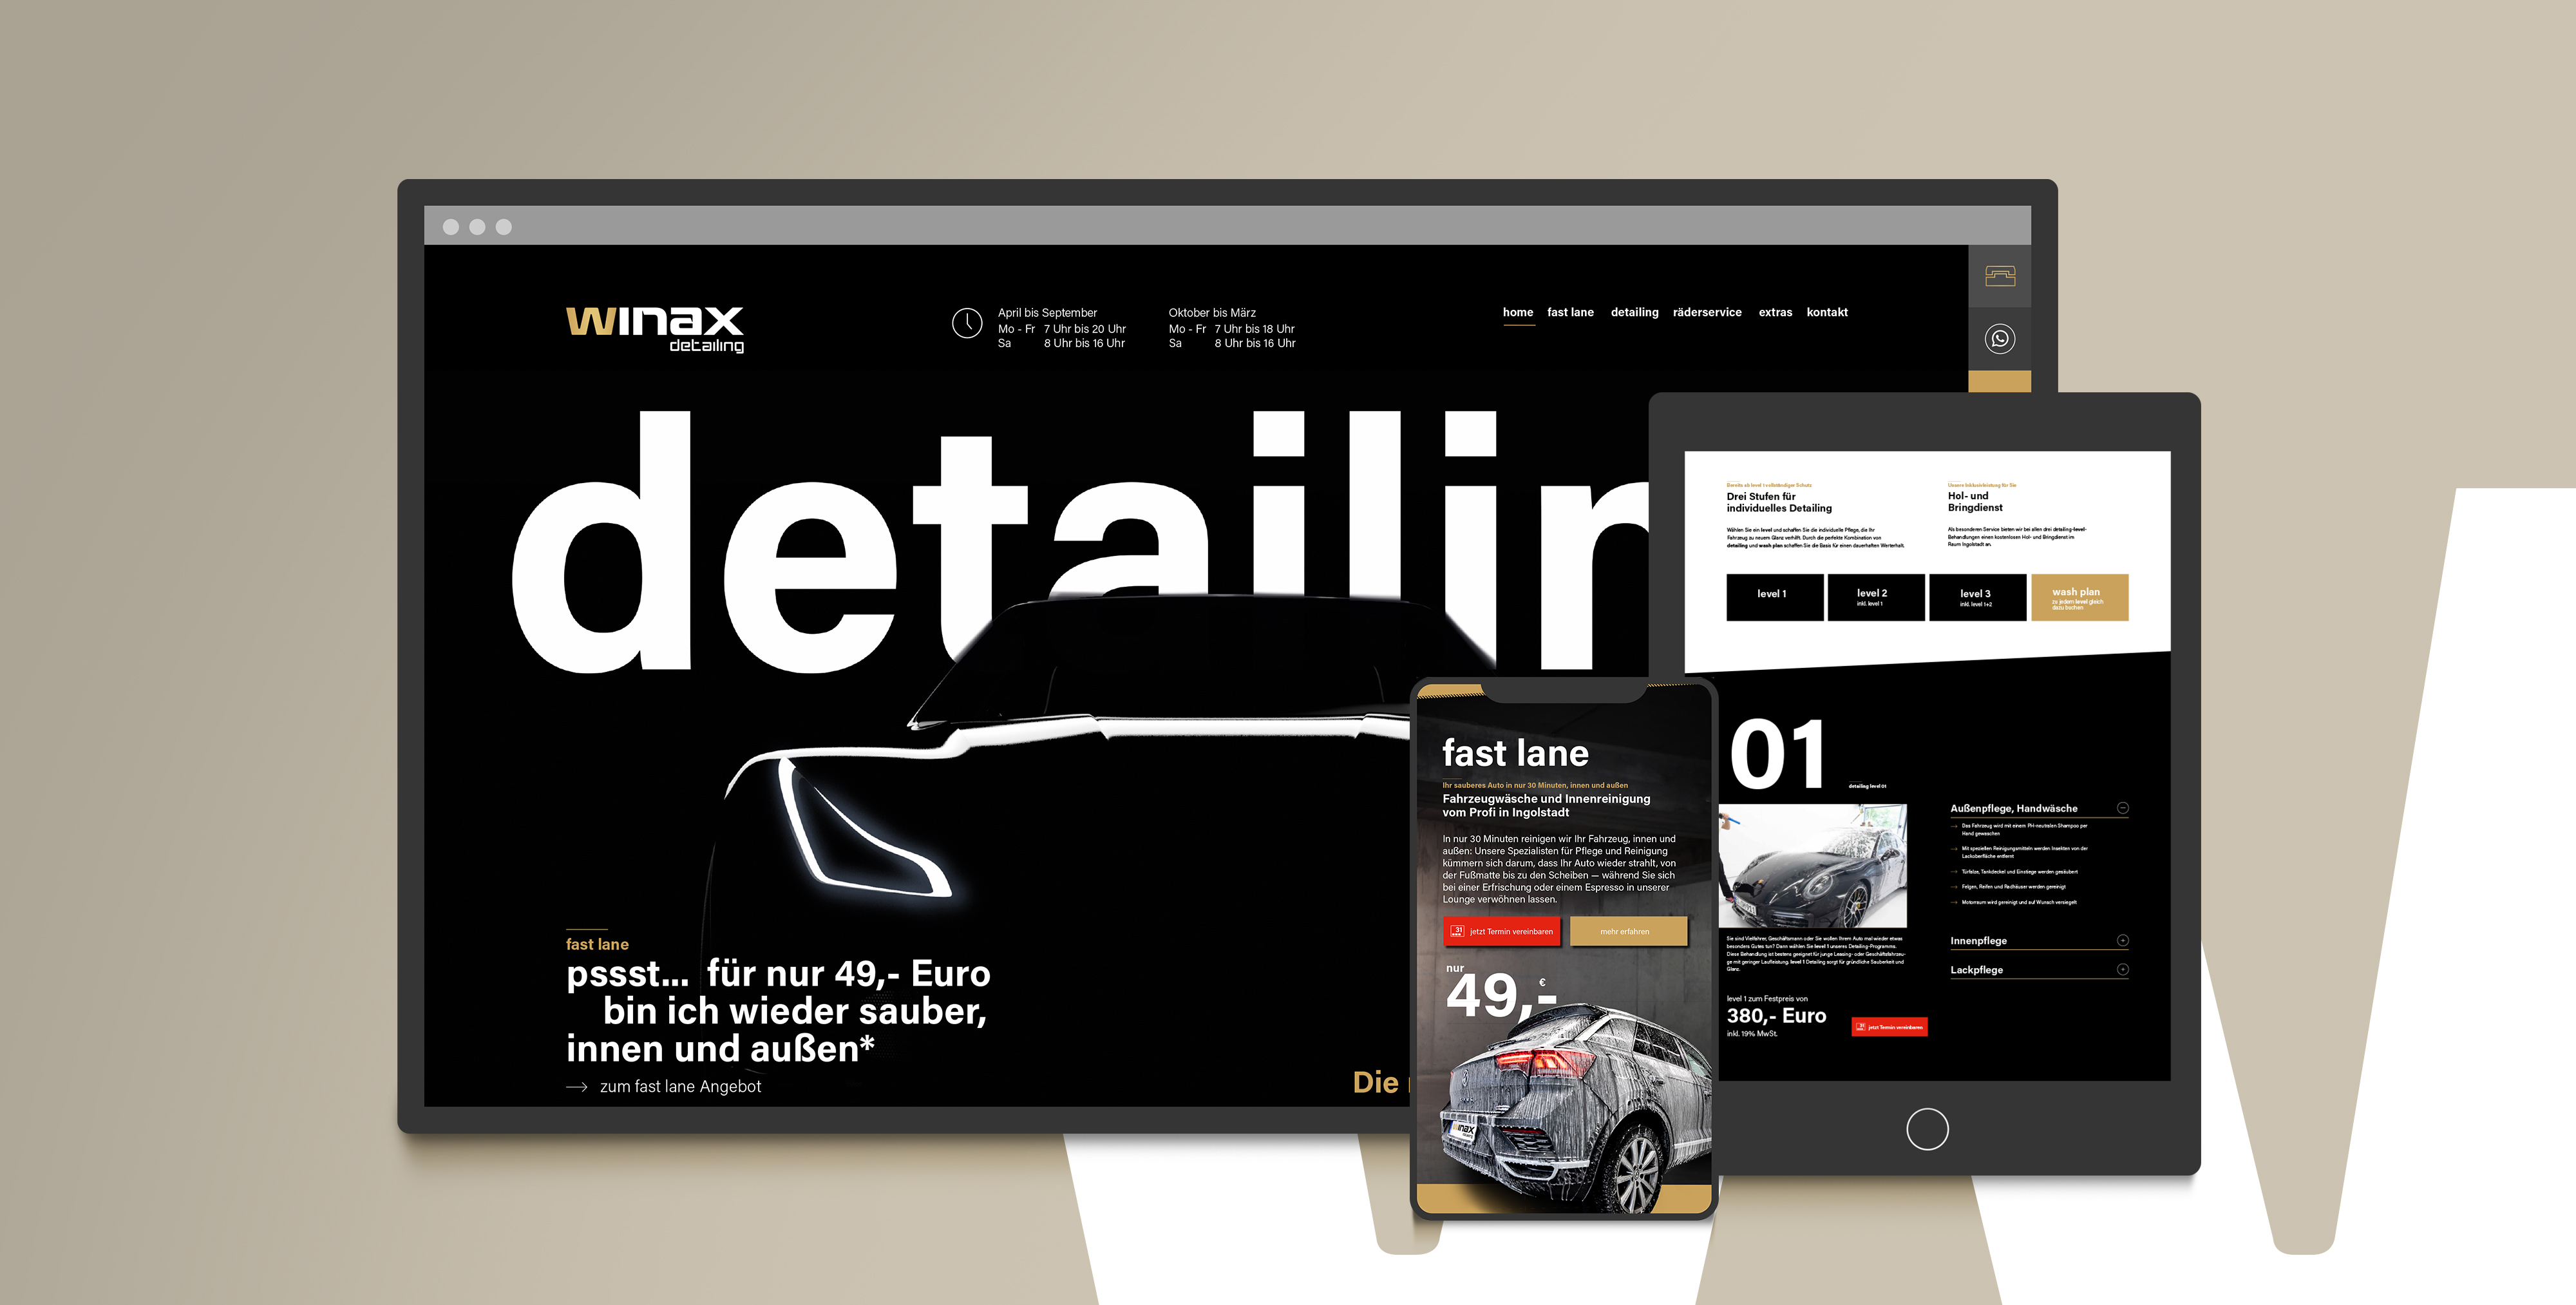 Neue Webseite für winax detailing, frisch aufpoliert mit responsive Design und on-page SEO